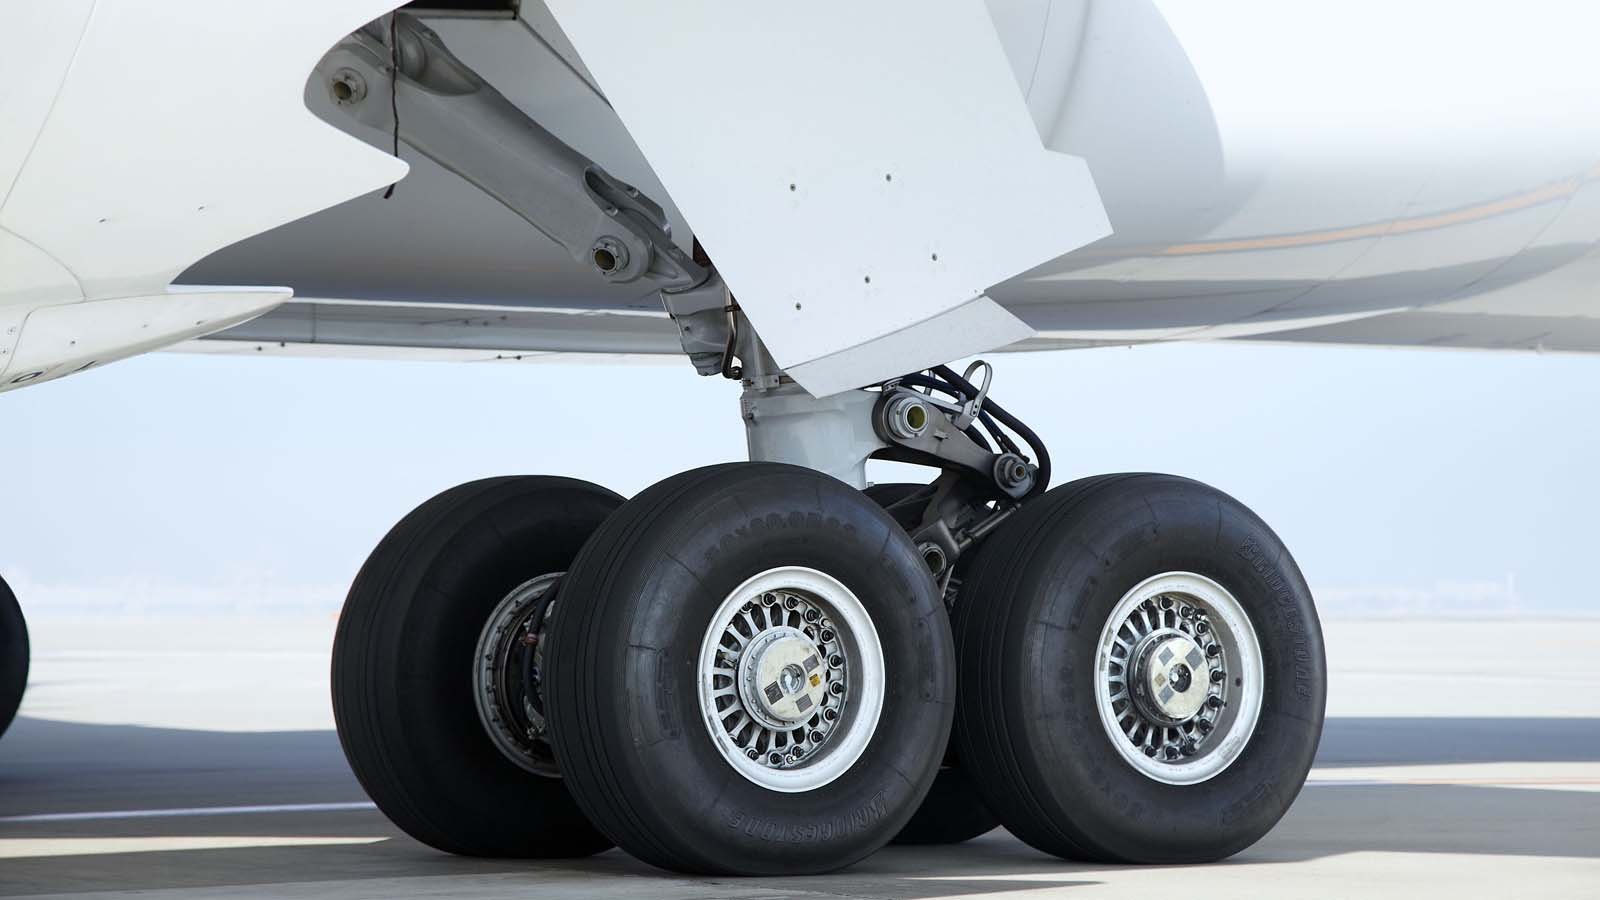 Колесо самолета купить. Aircraft Tyres Bridgestone. Шины шасси самолета. Резина для шасси самолета. Покрышка самолёт колесо.